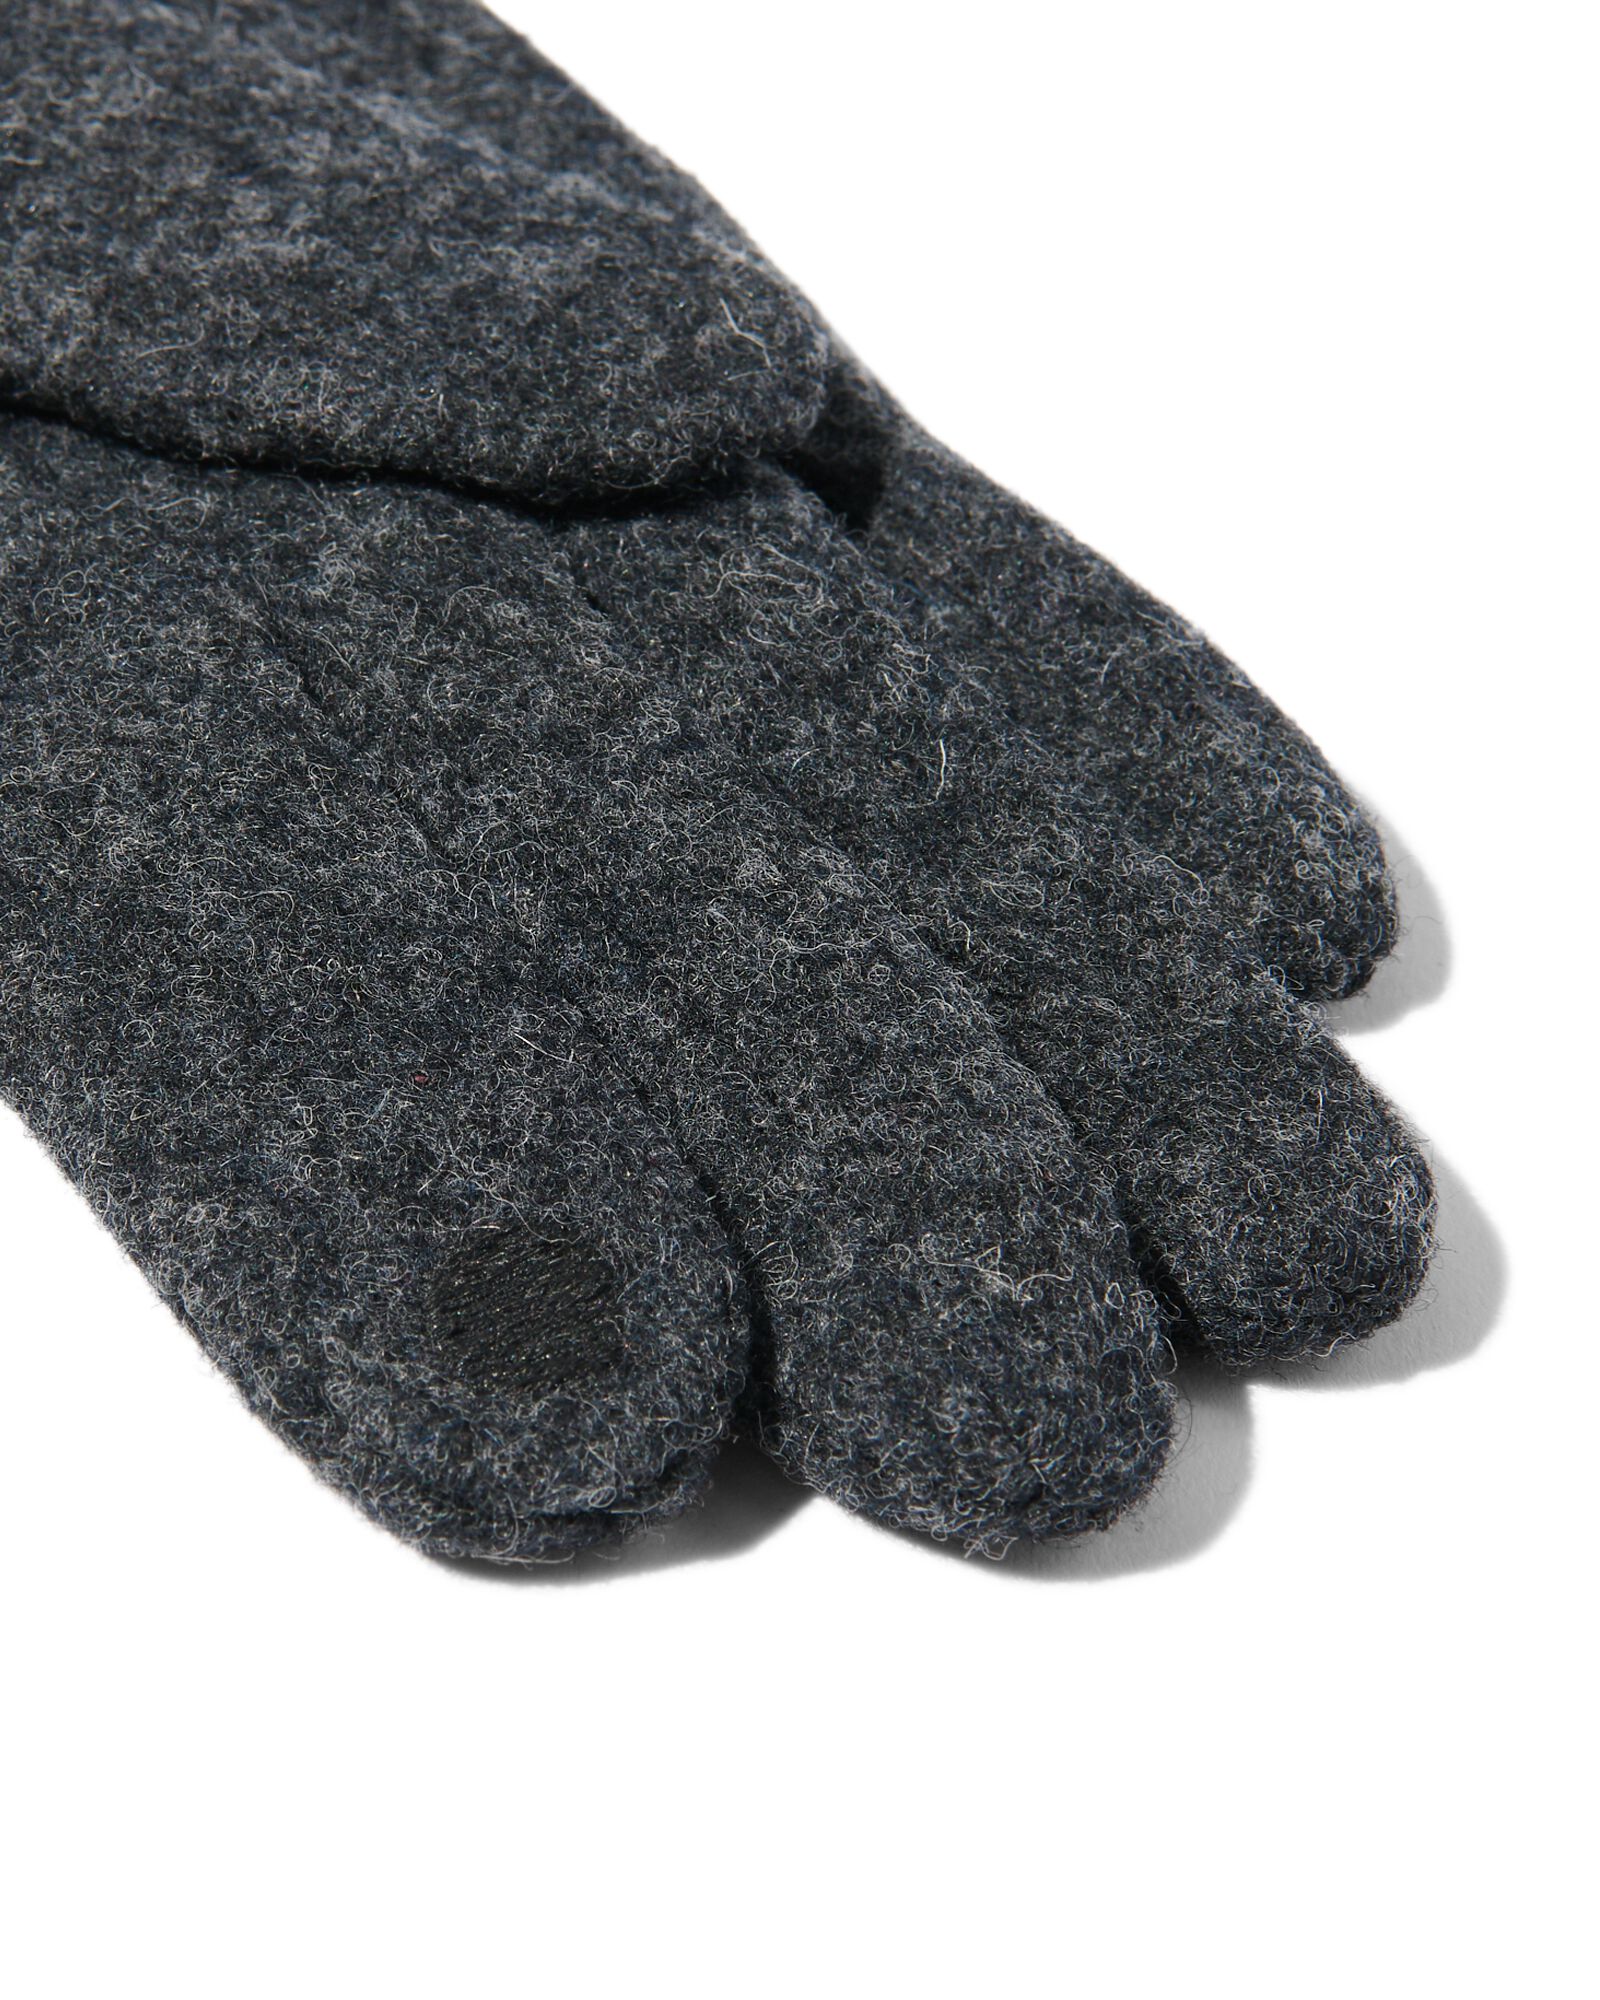 dameshandschoenen wol touchscreen zwart XL - 16460659 - HEMA